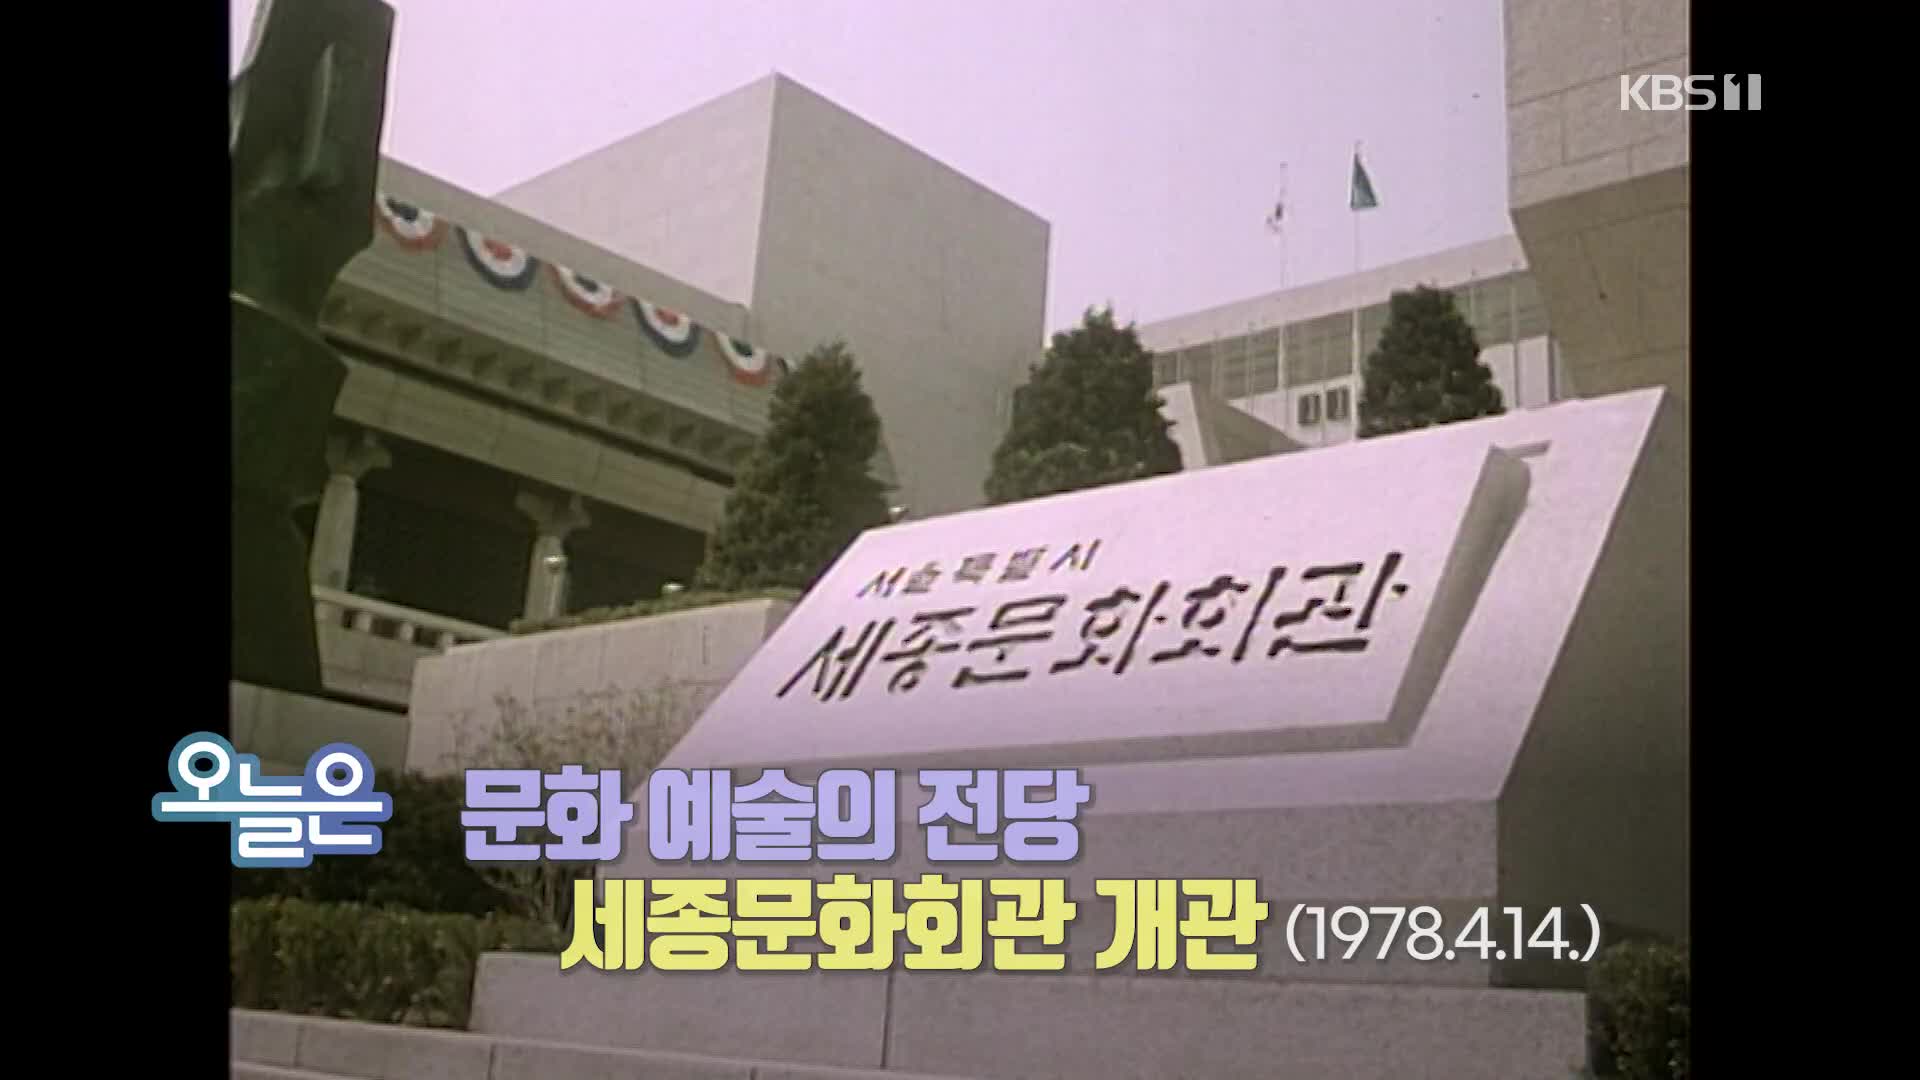 [오늘은] 문화 예술의 전당 세종문화회관 개관 (1978.4.14.)